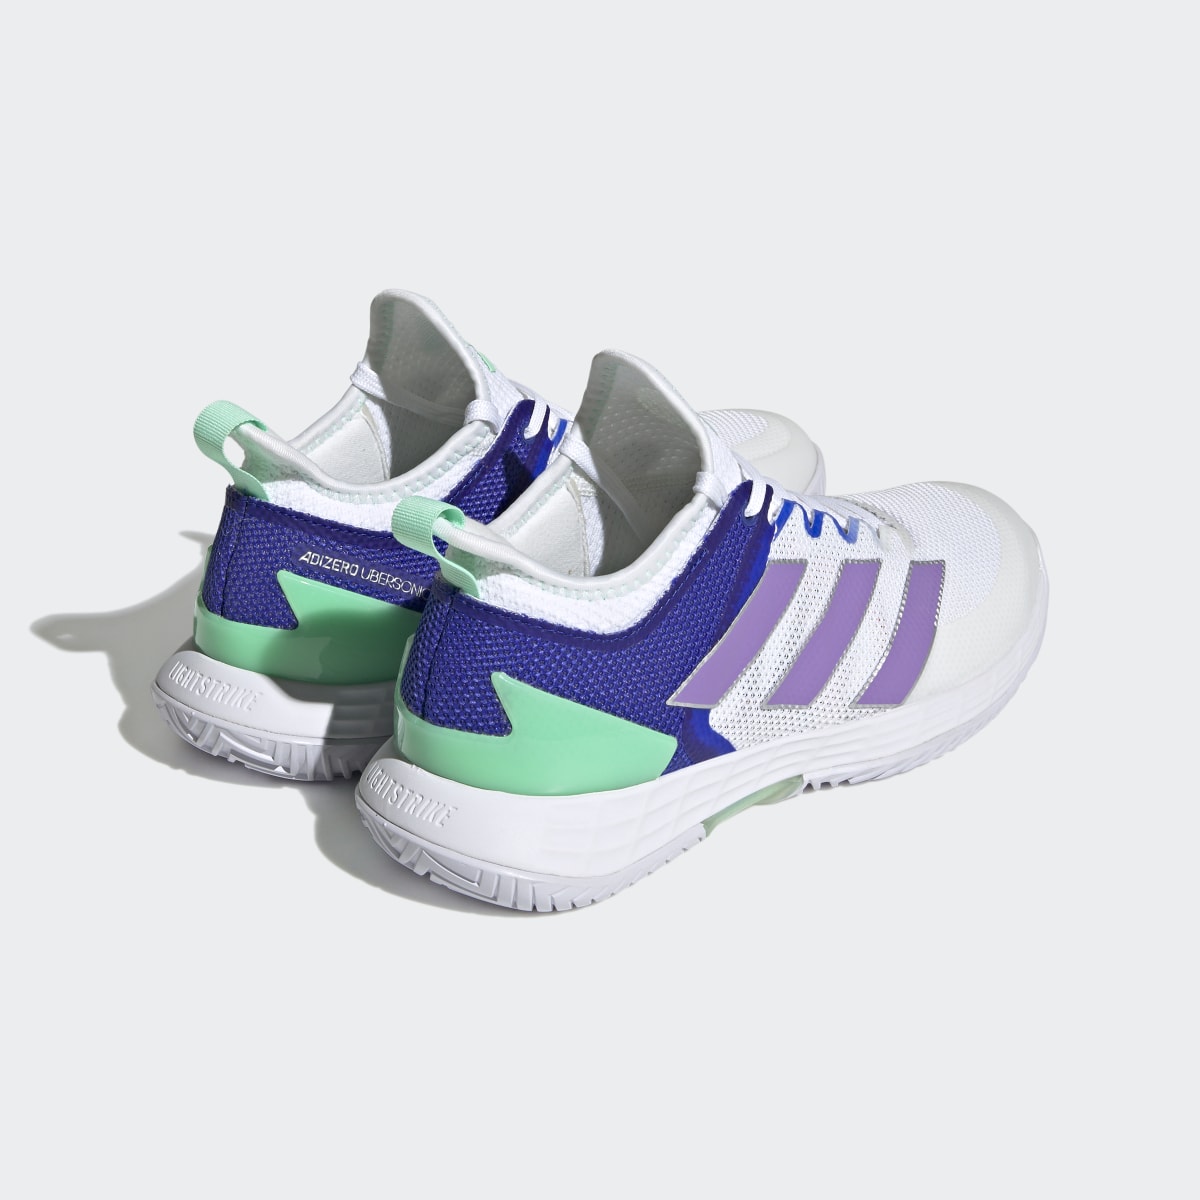 Adidas adizero Ubersonic 4 Tennis Shoes. 9